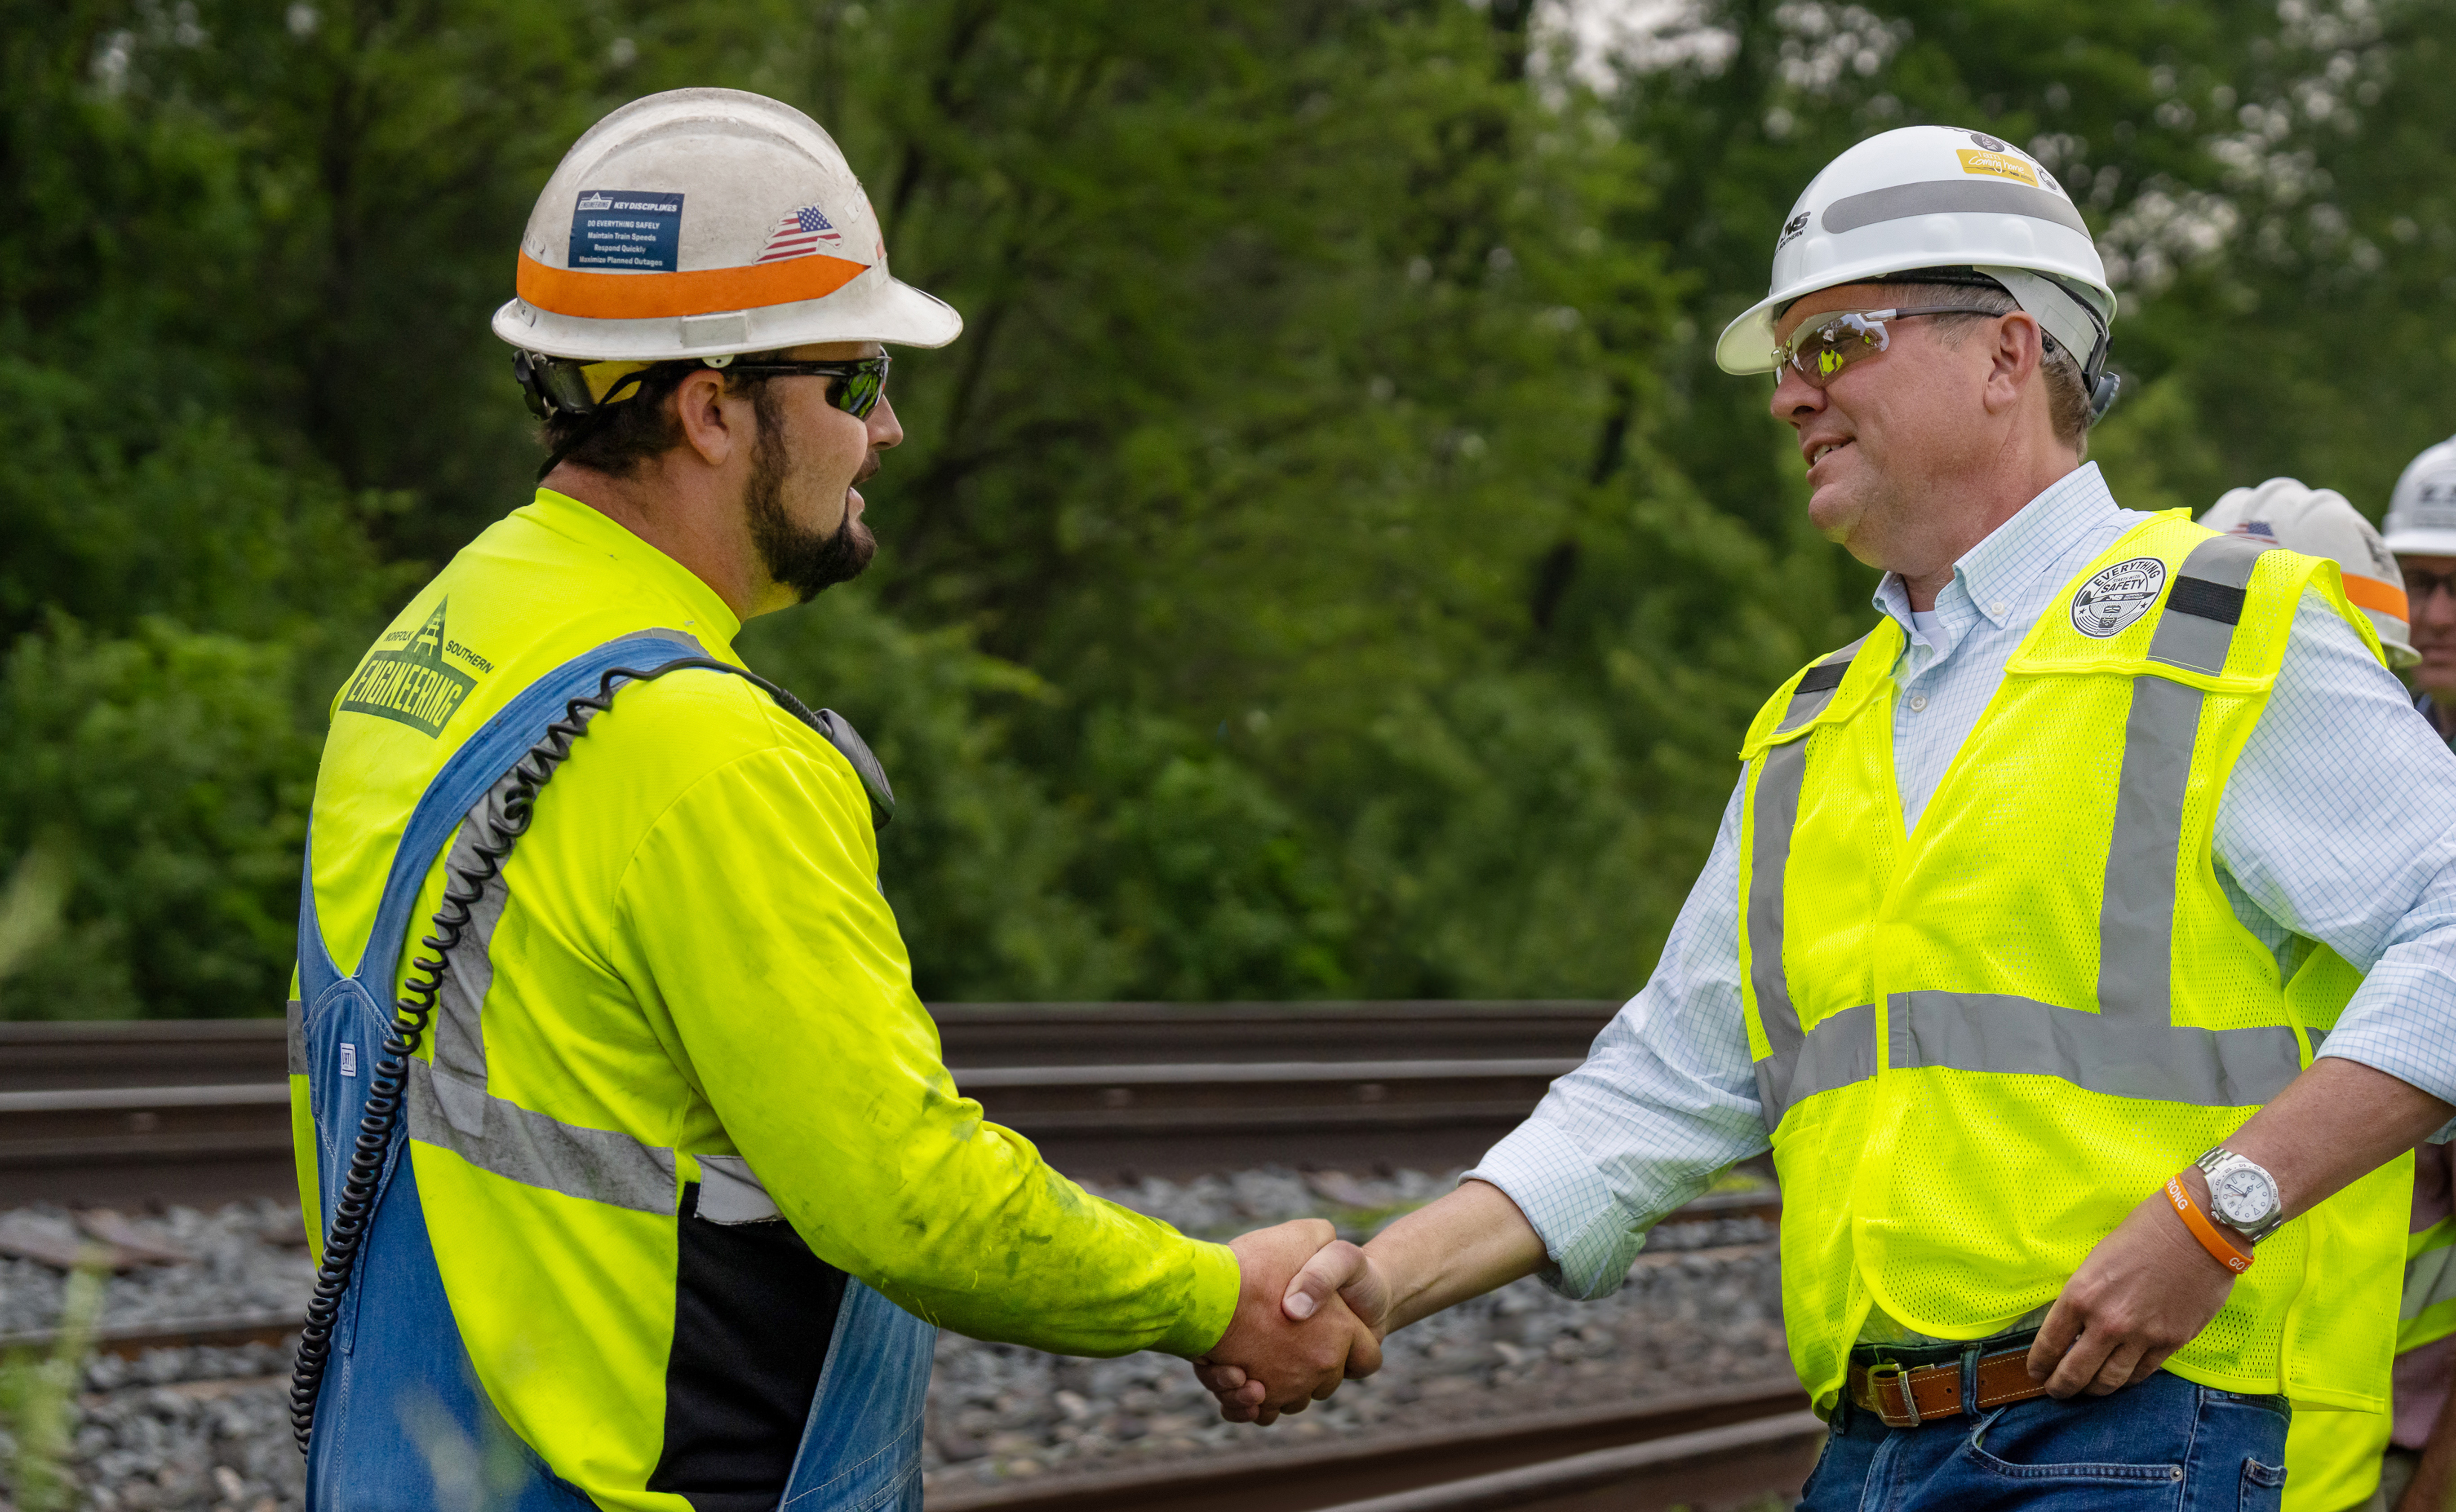 Norfolk Southern transportation leaders shaking hands